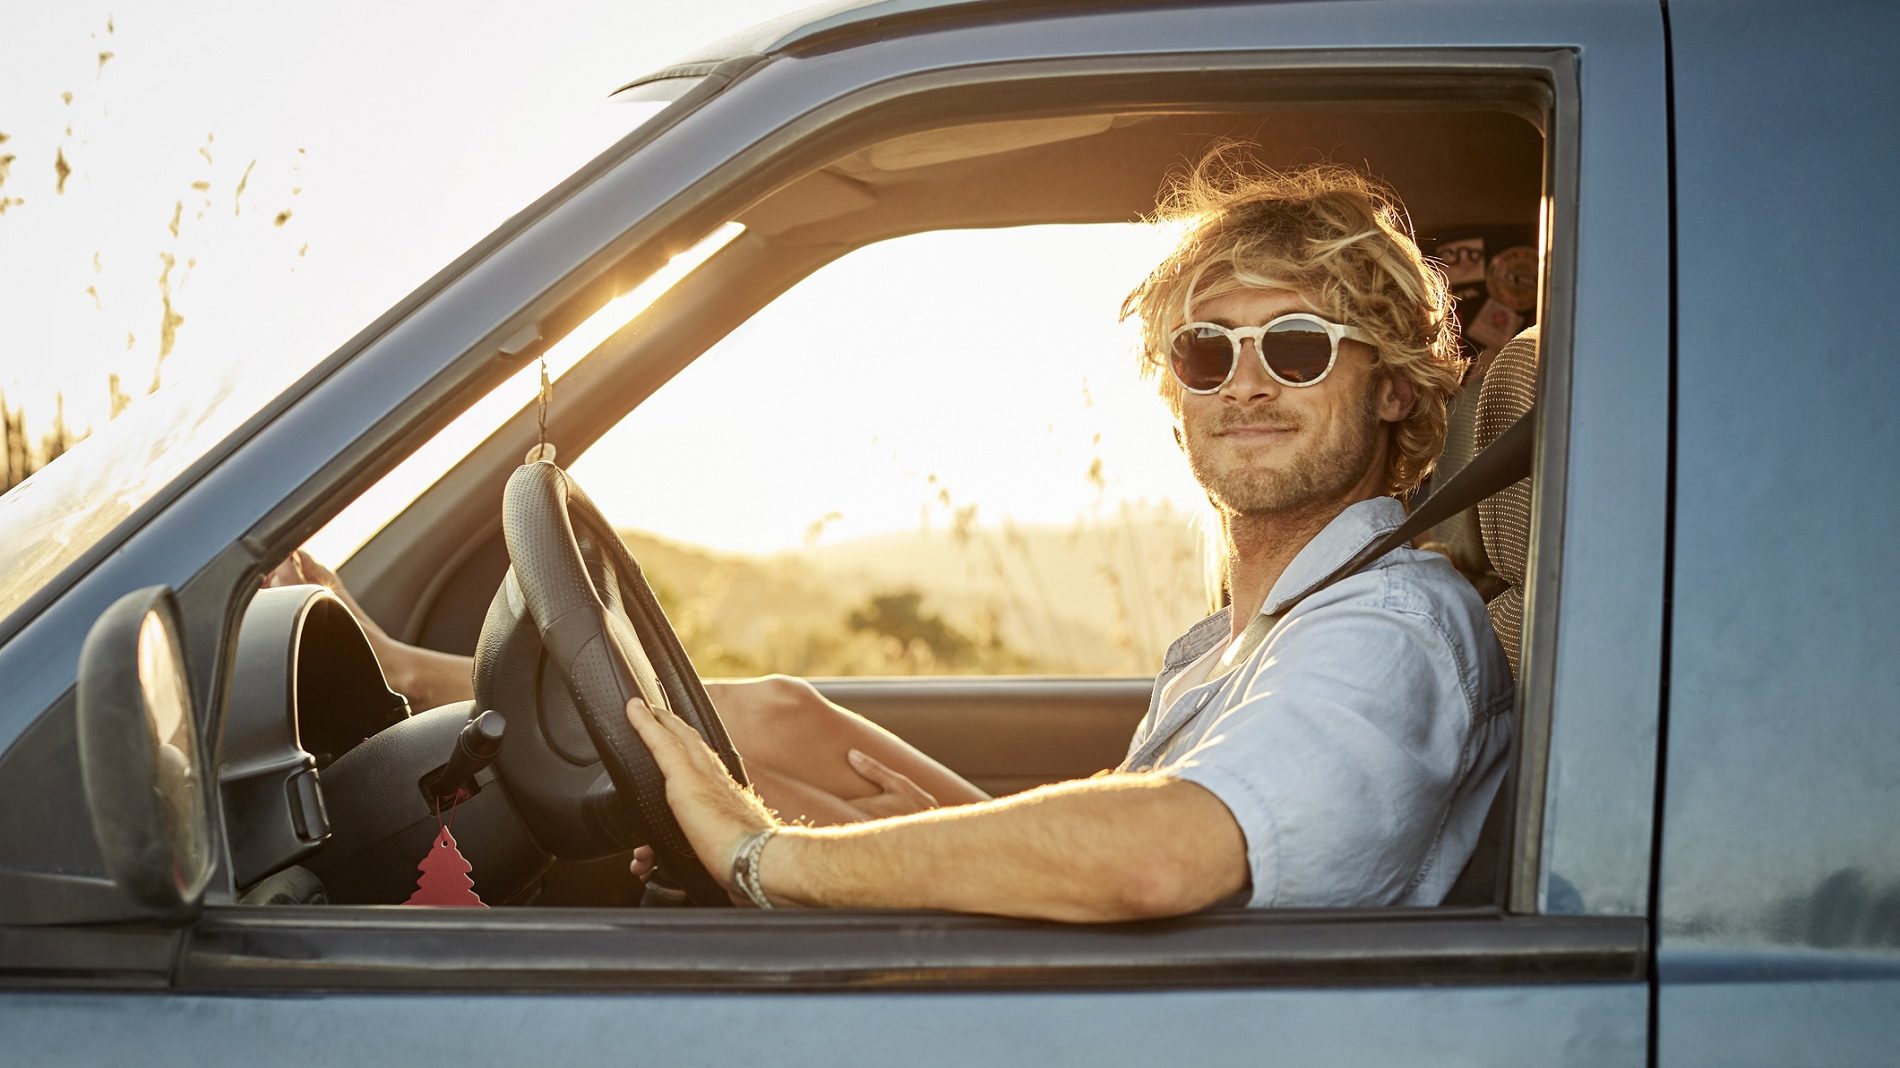 Las mejores gafas de sol para conducir, según la DGT - Dial